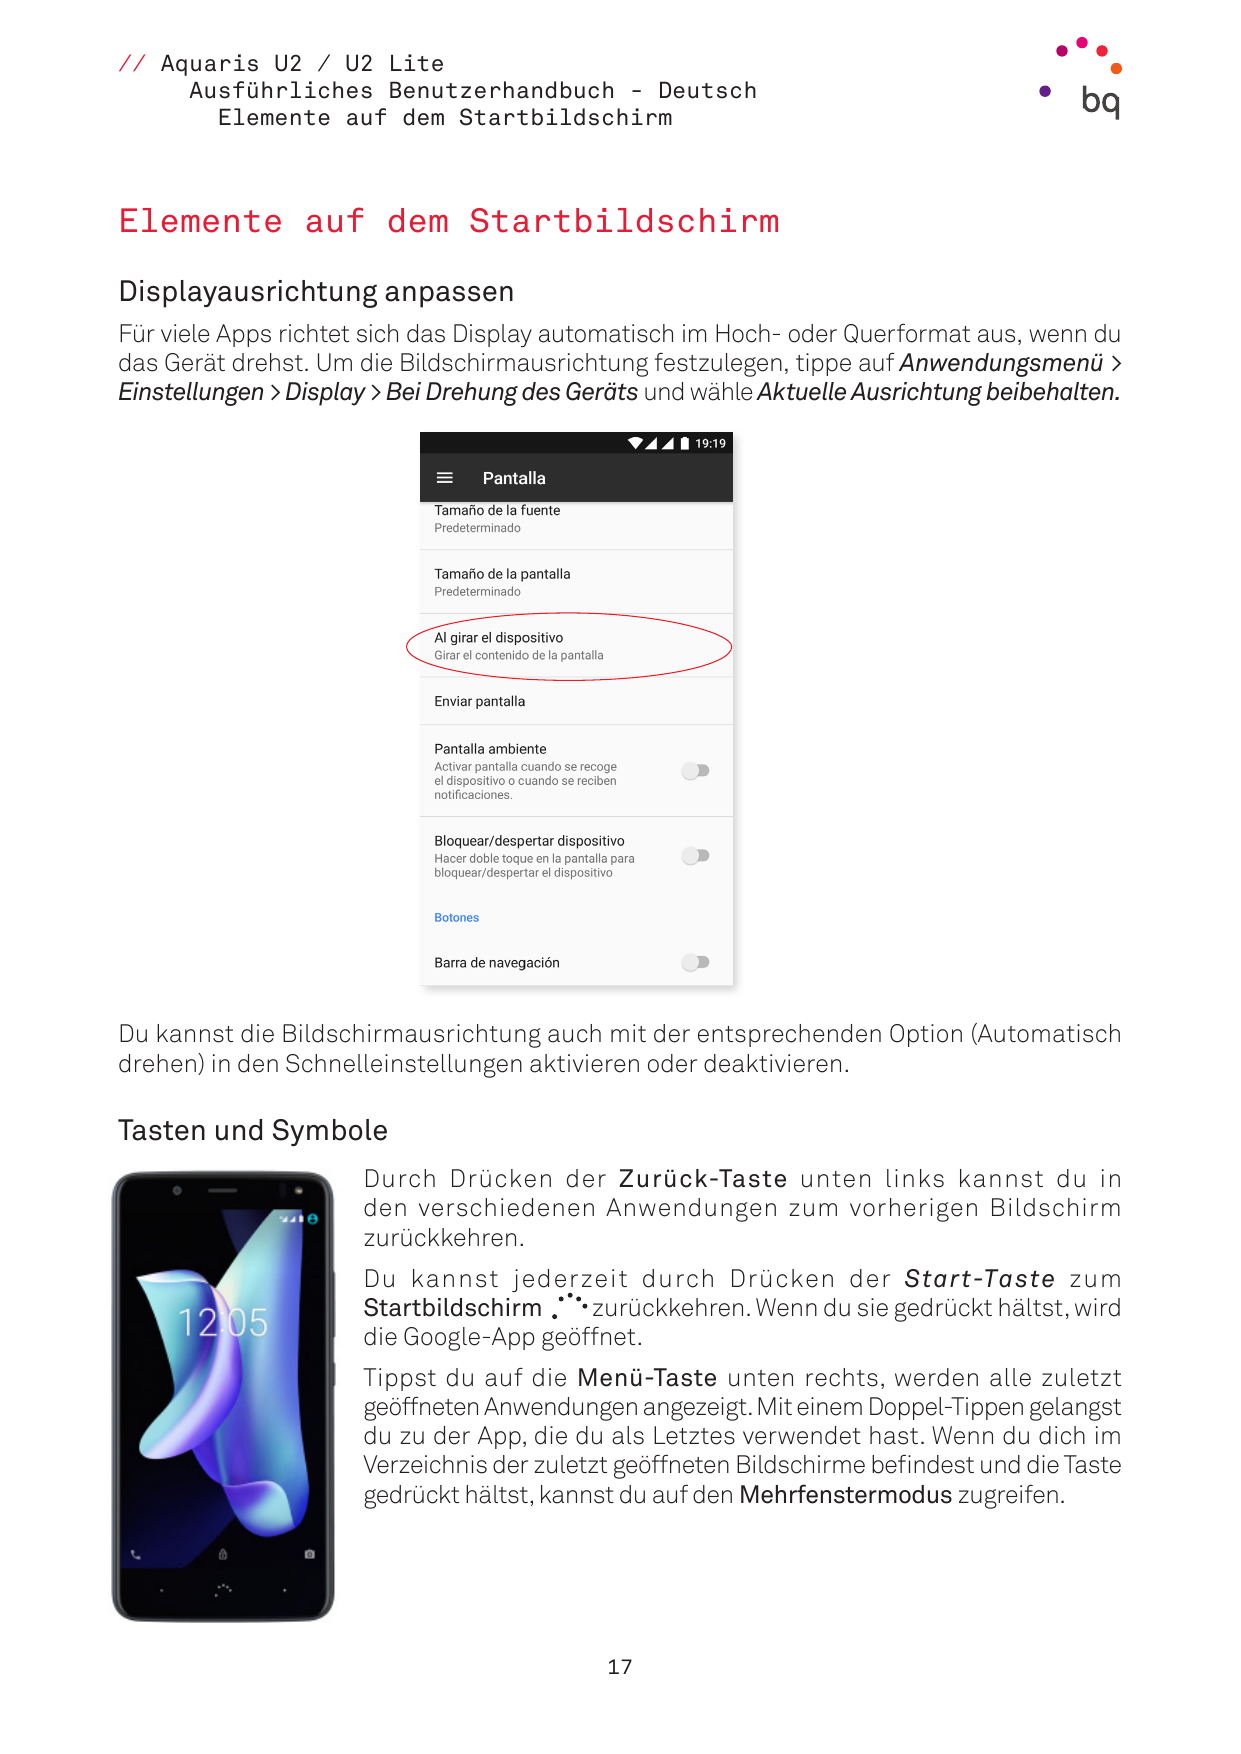 // Aquaris U2 / U2 LiteAusführliches Benutzerhandbuch - DeutschElemente auf dem StartbildschirmElemente auf dem StartbildschirmD